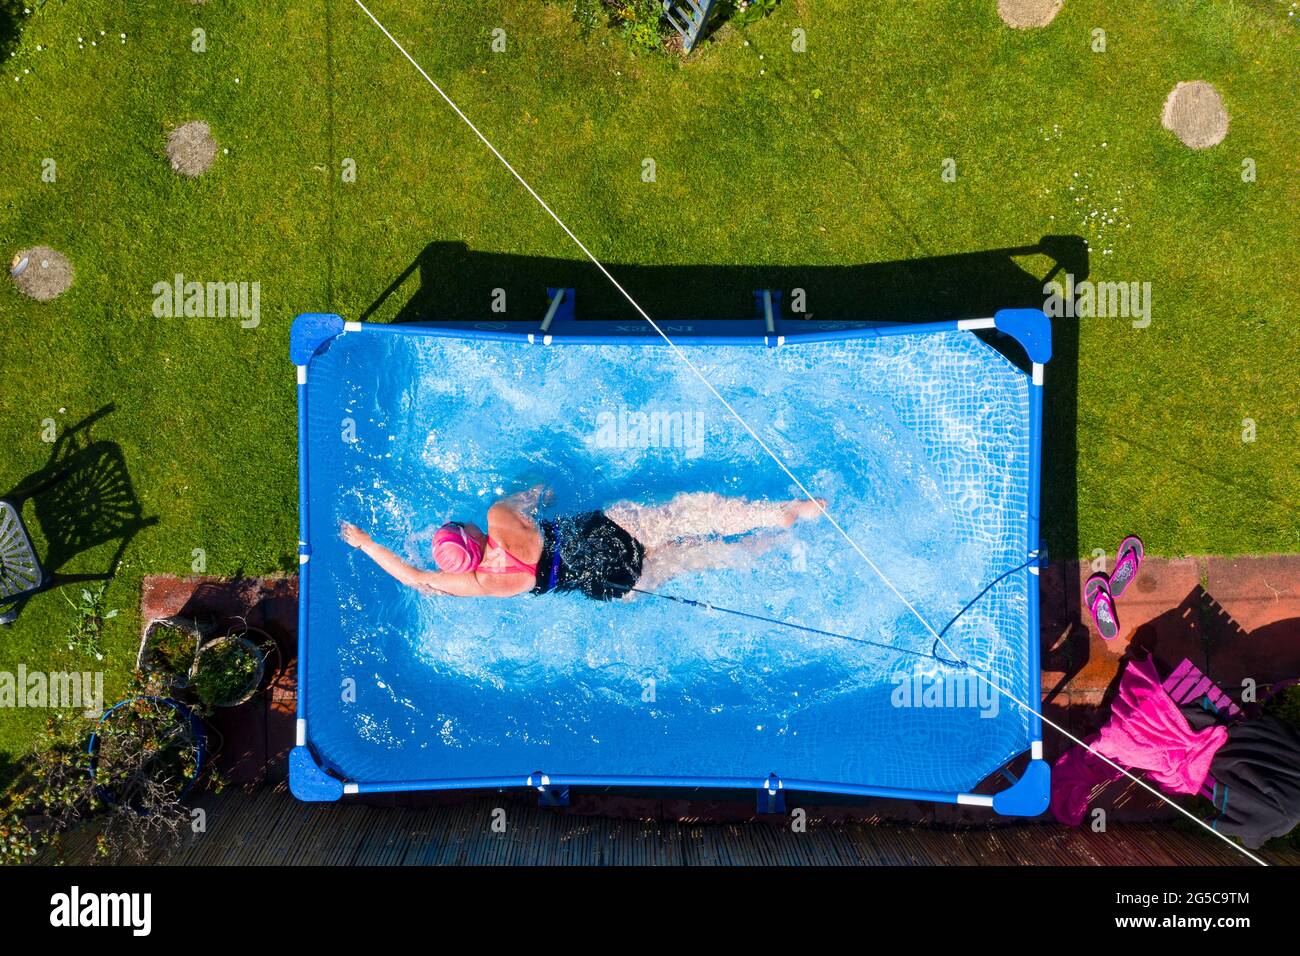 Fiona Philp de Limekilns, Fife, un nadador de agua libre salvaje, durante un baño diario en la piscina en el jardín, Limekilns, Escocia, Reino Unido Foto de stock